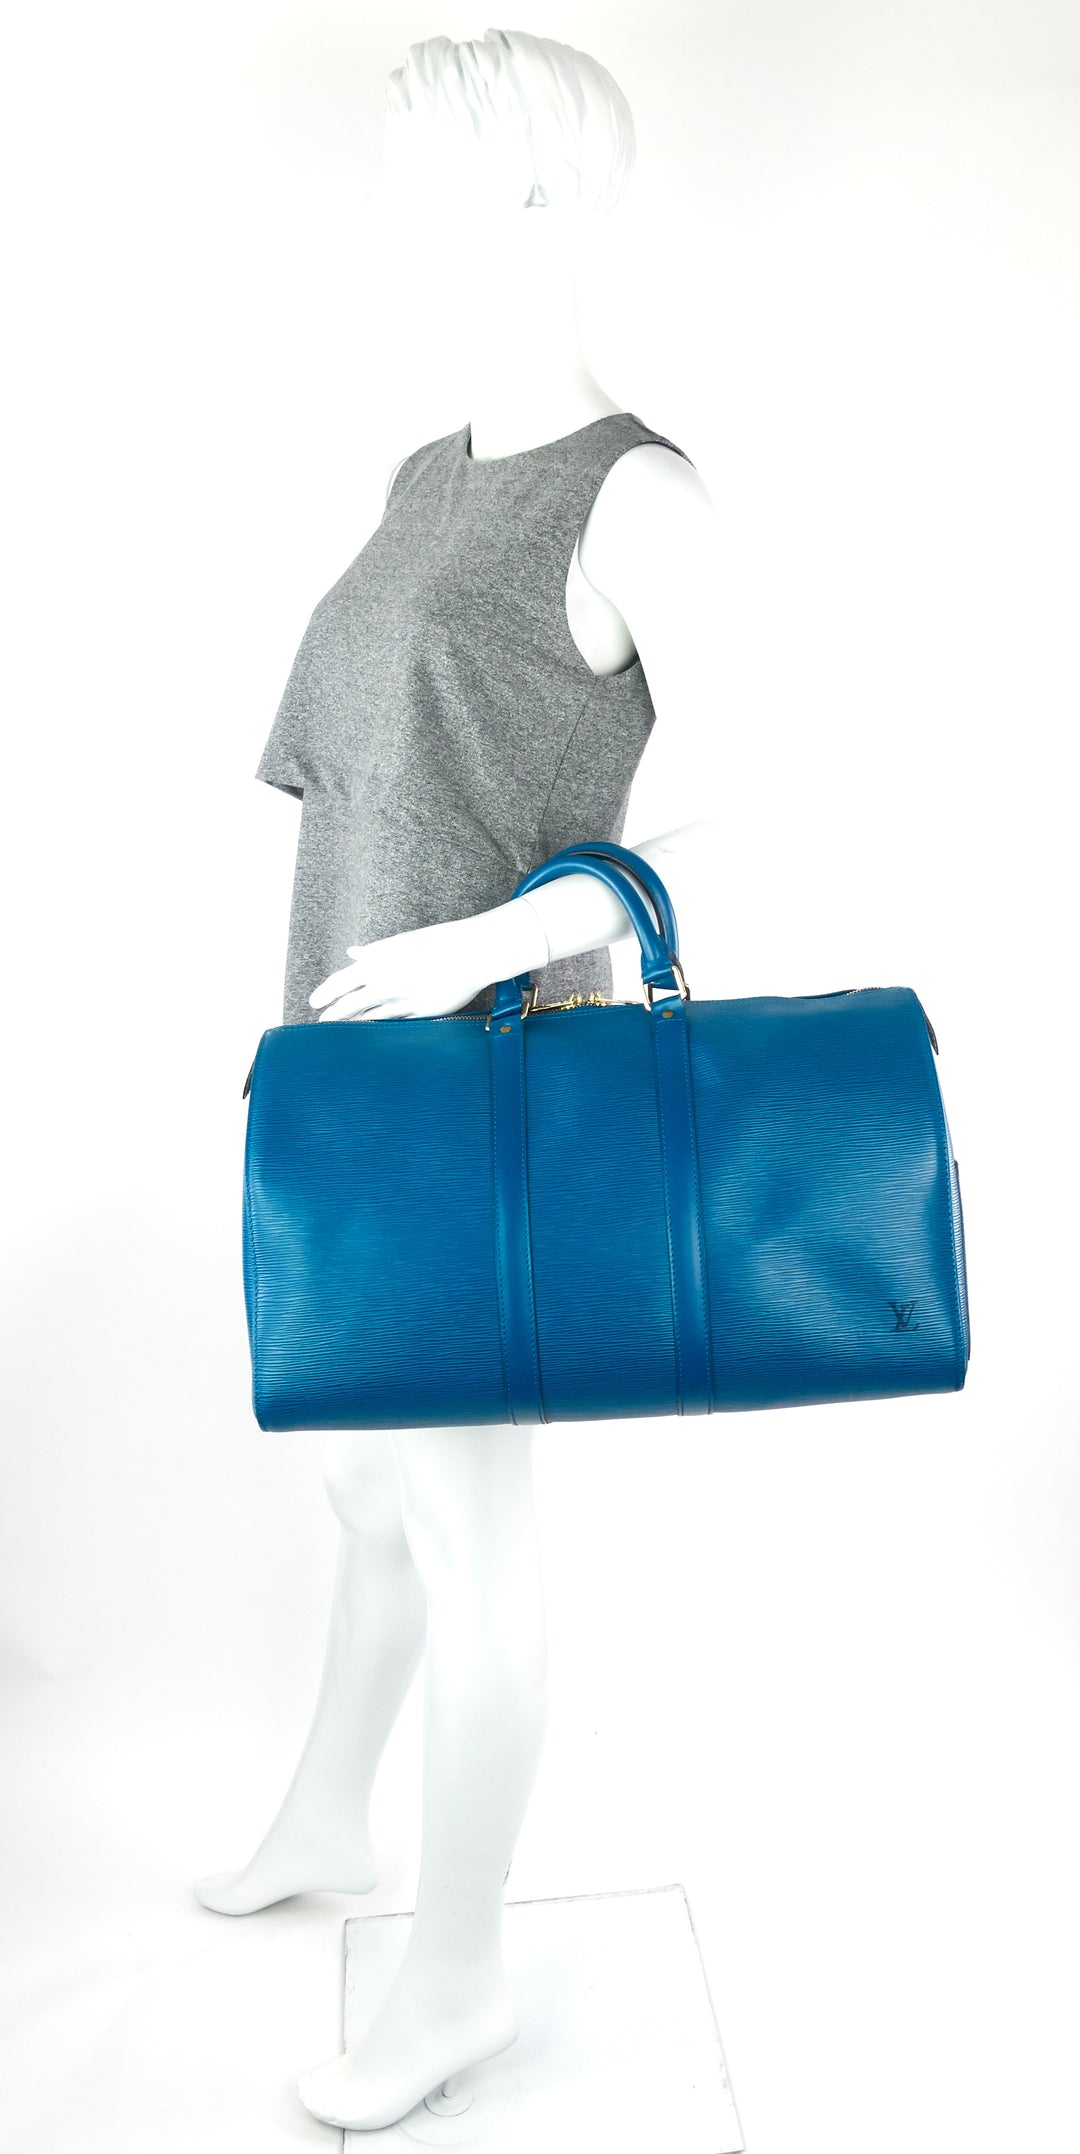 keepall 45 blue epi leather bag